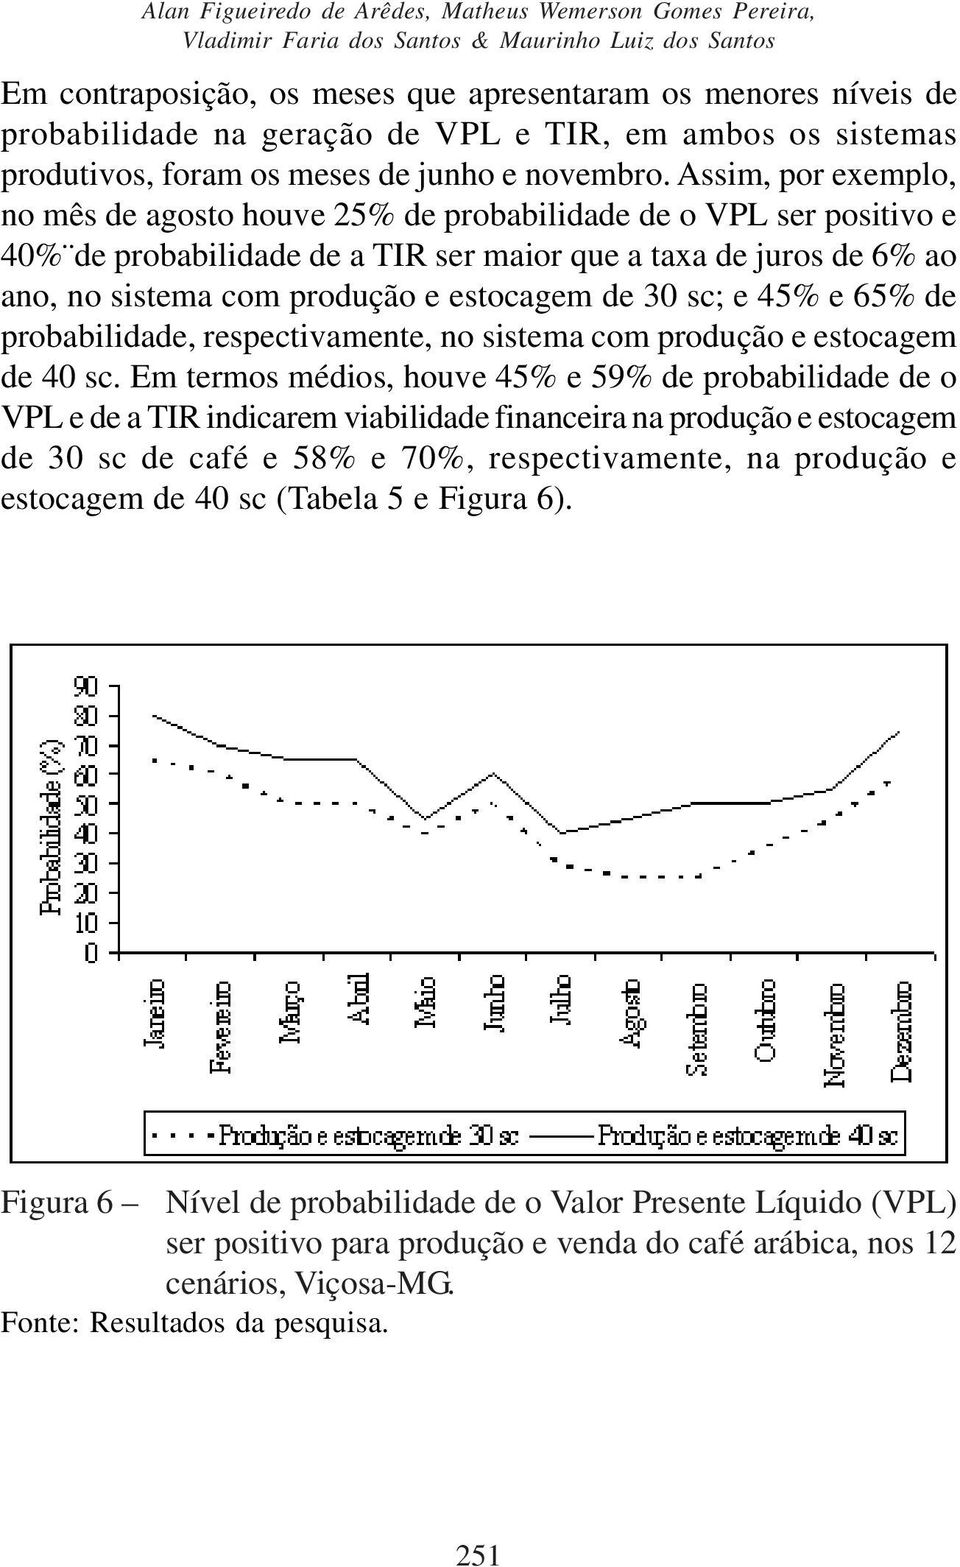 Assim, por exemplo, no mês de agosto houve 25% de probabilidade de o VPL ser positivo e 40% de probabilidade de a TIR ser maior que a taxa de juros de 6% ao ano, no sistema com produção e estocagem